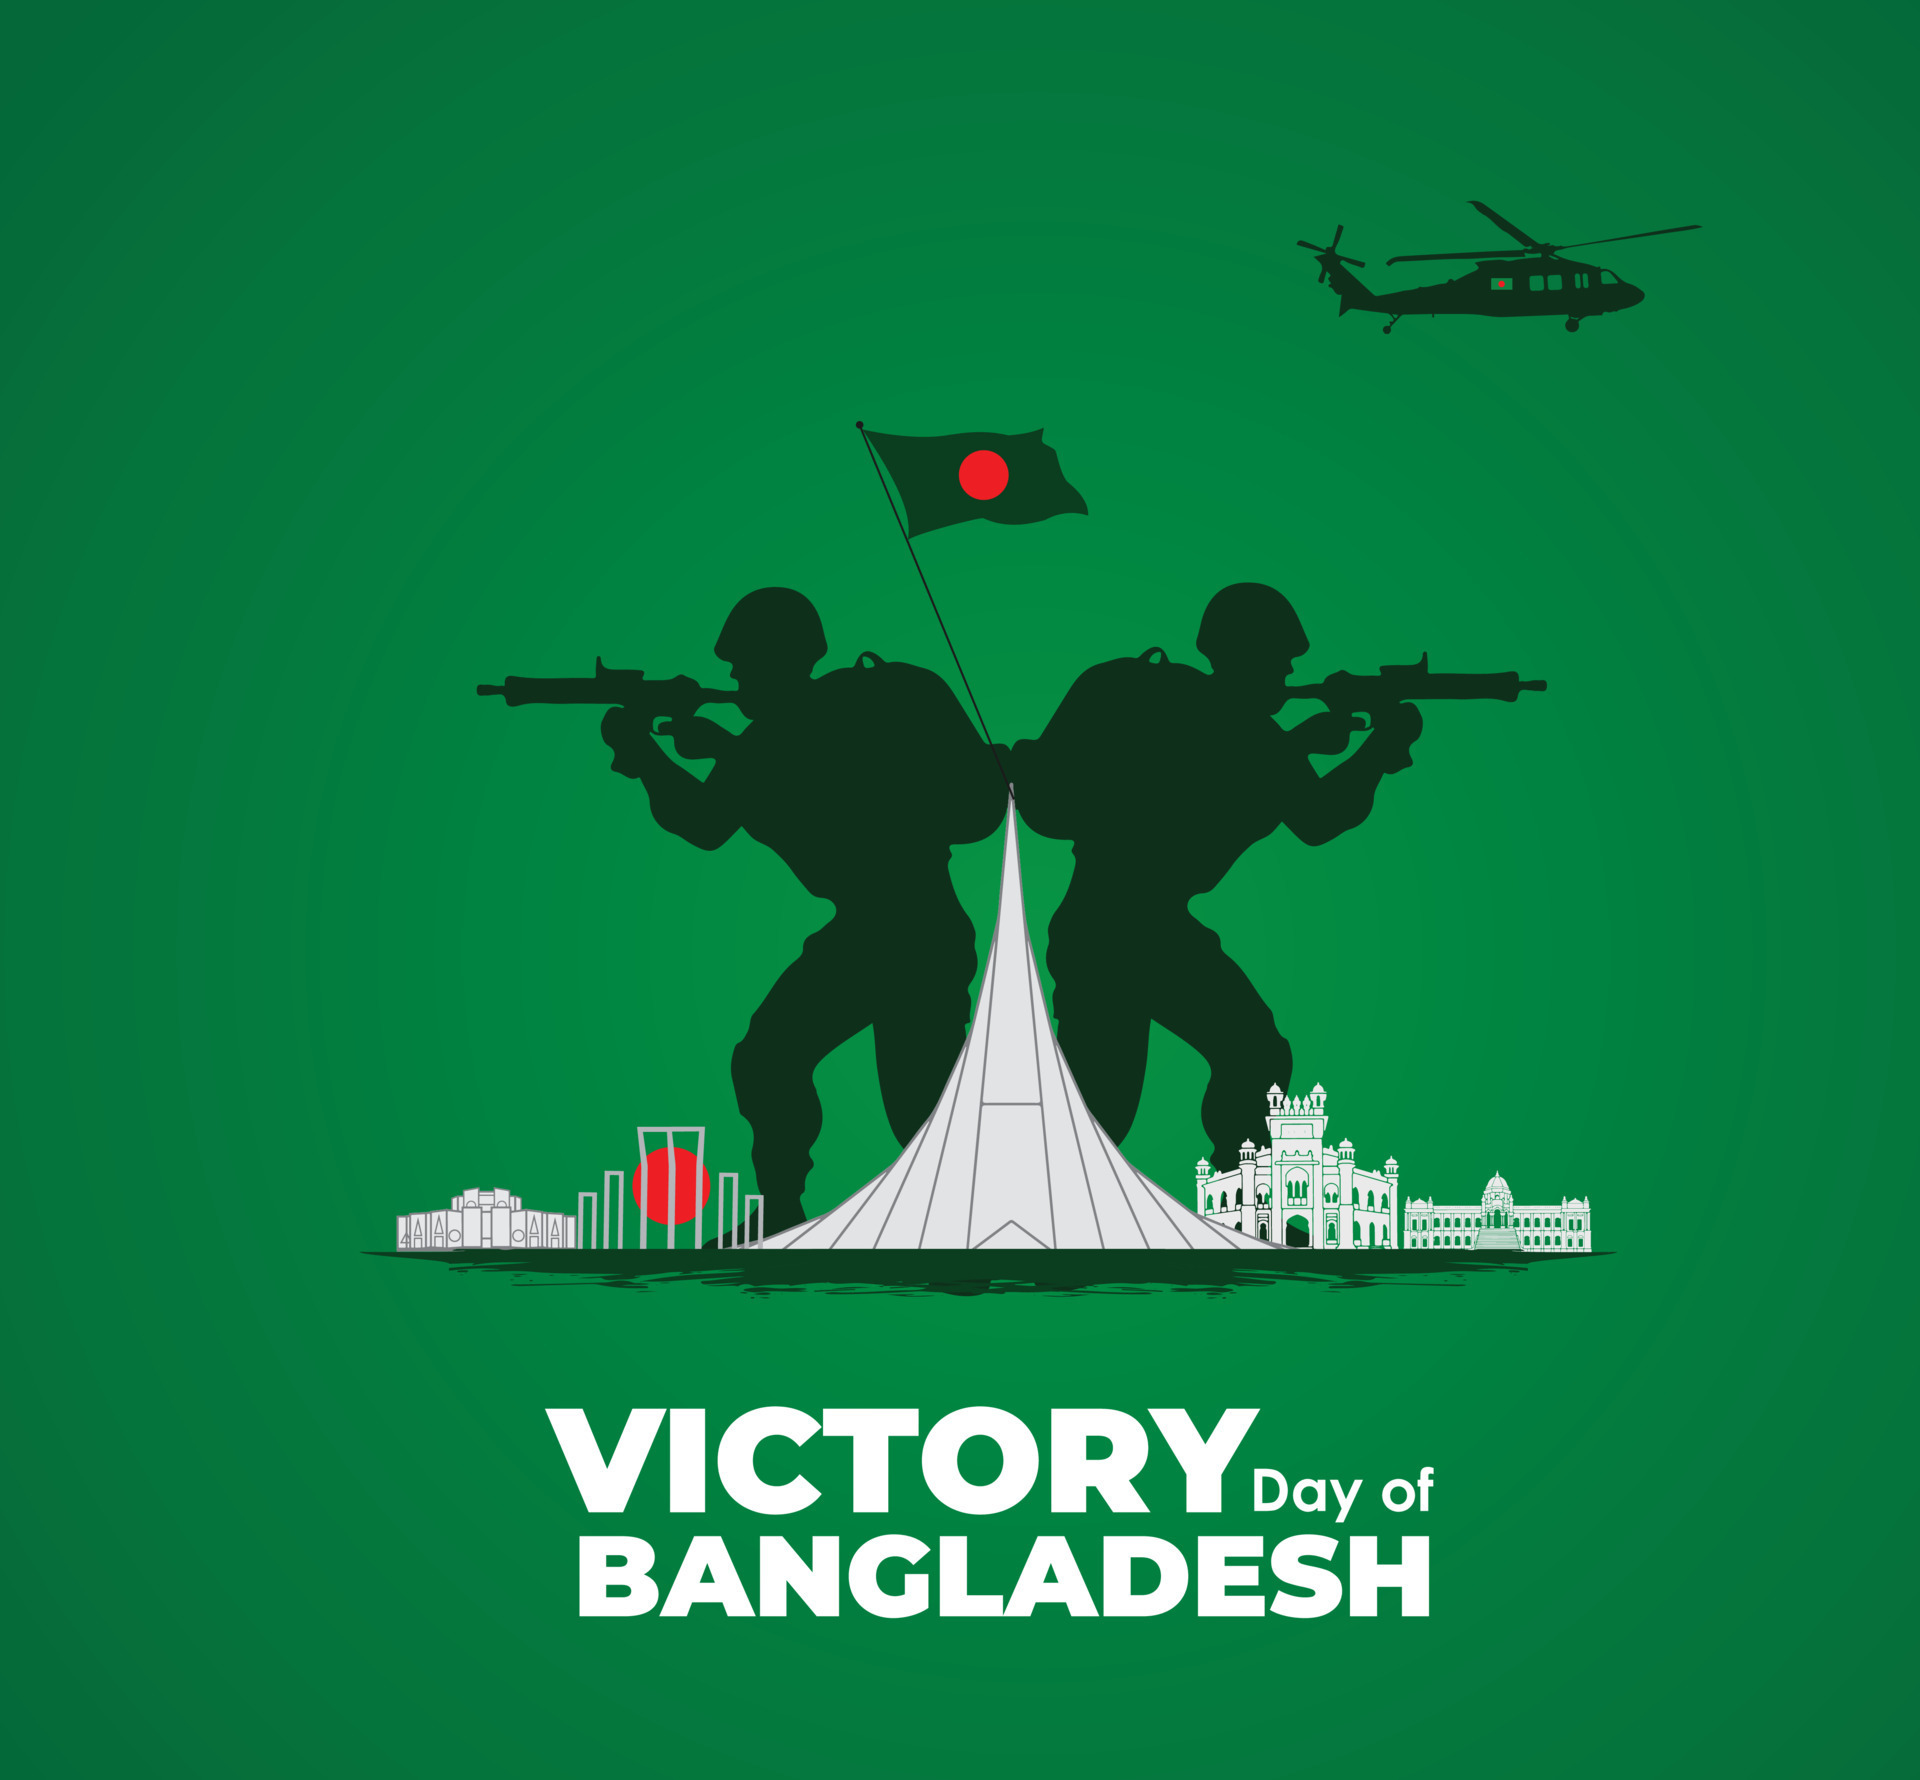 Bức ảnh này sẽ giúp bạn hiểu rõ hơn về bối cảnh lịch sử của ngày độc lập Bangladesh vào ngày 26 tháng 